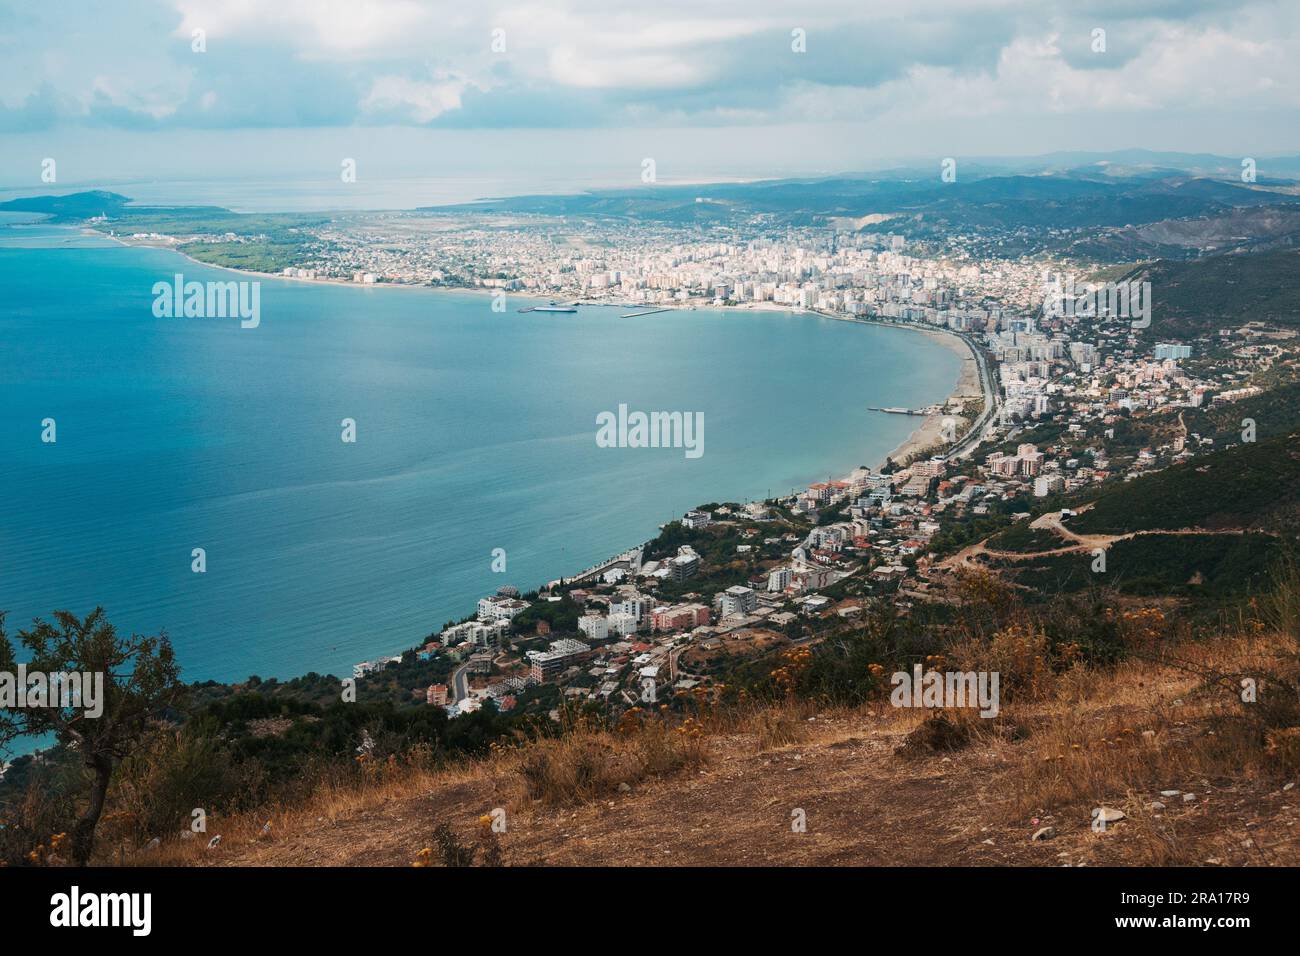 La città costiera di Vlorë, nell'Albania meridionale Foto Stock